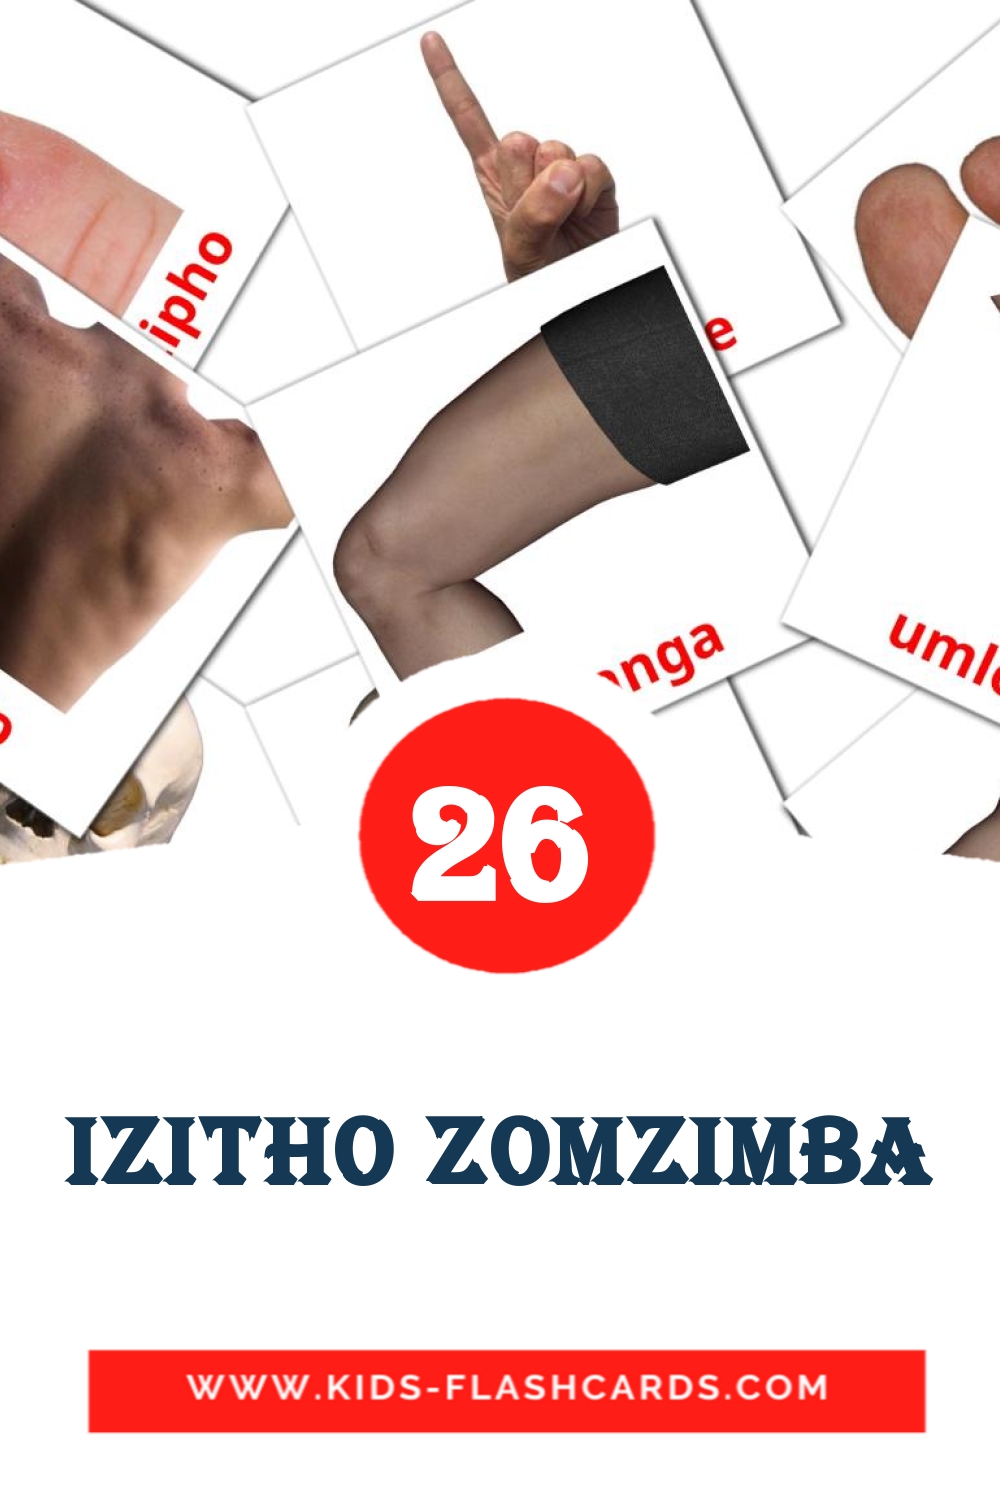 Izitho zomzimba на зулу для Детского Сада (26 карточек)